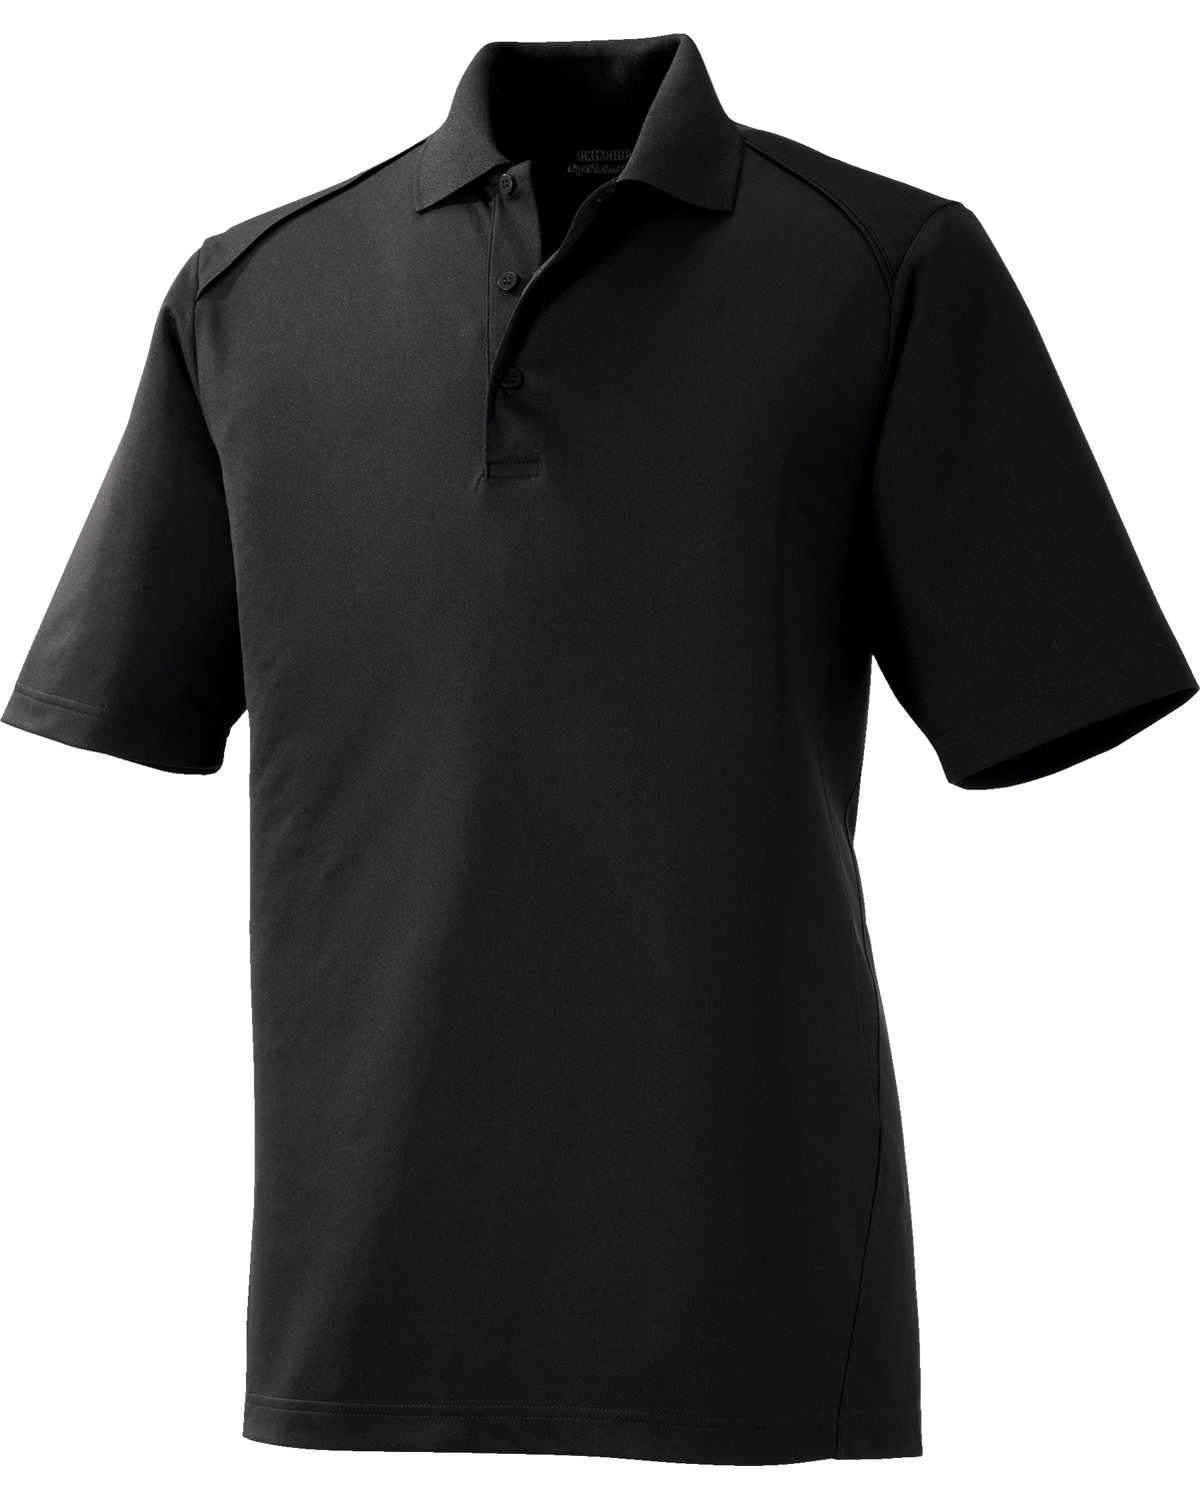 Camiseta protección hombro derecho y compresión 360º Shoulder Pro Right  Size S Color Black